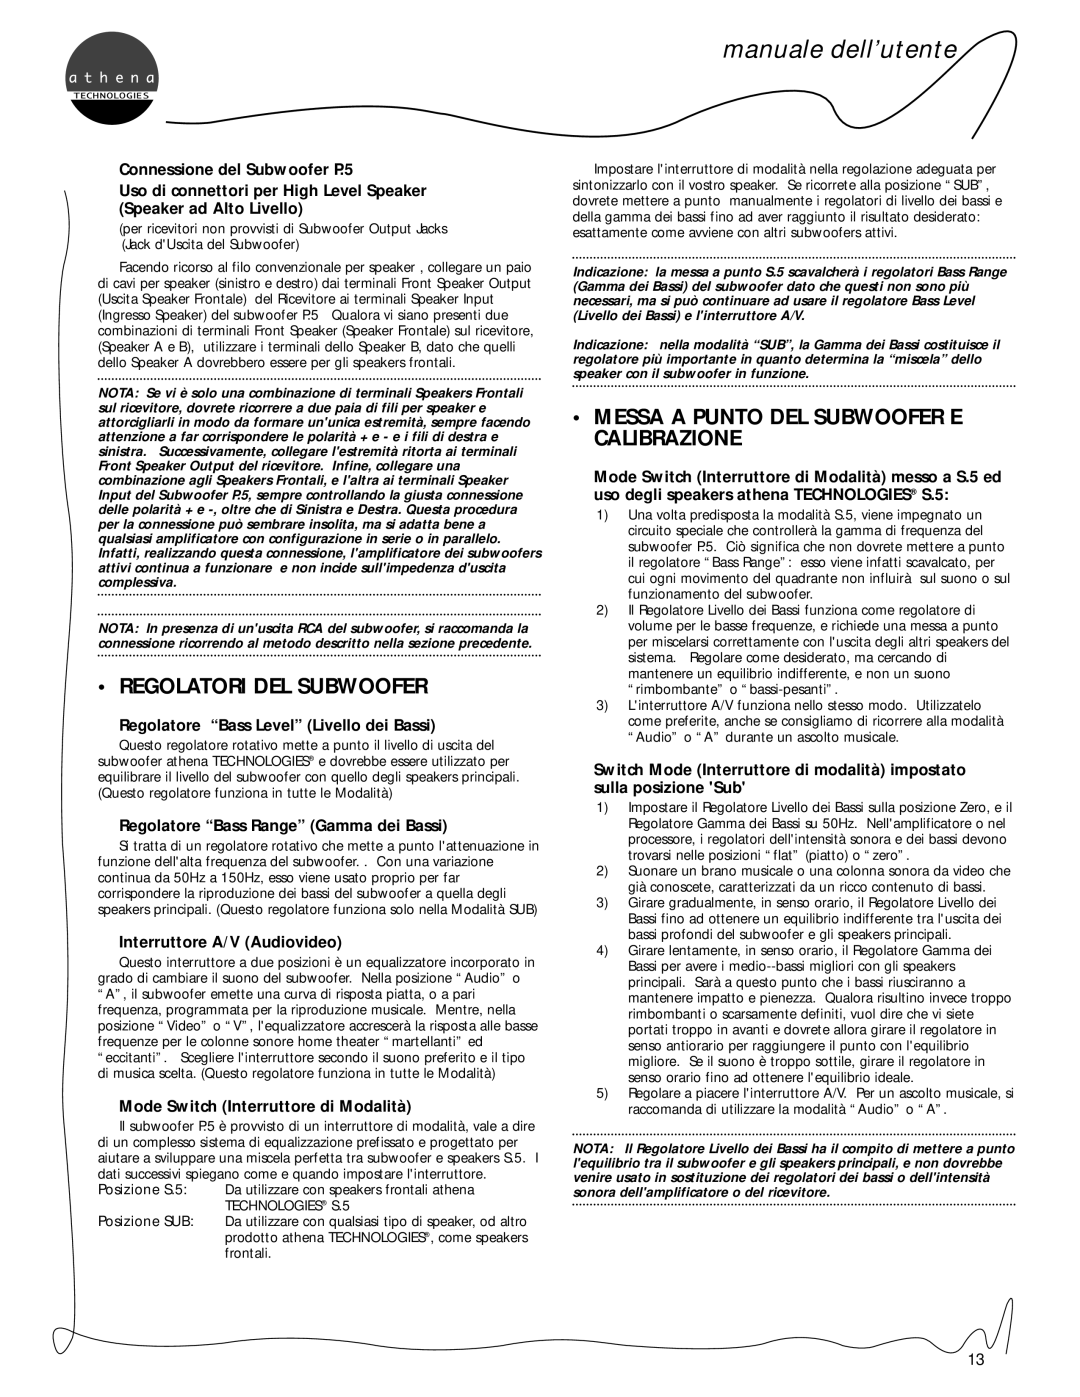 Athena Technologies S.5, C.5, P.5 Regolatori Del Subwoofer, Messa A Punto Del Subwoofer E Calibrazione, manuale dell’utente 